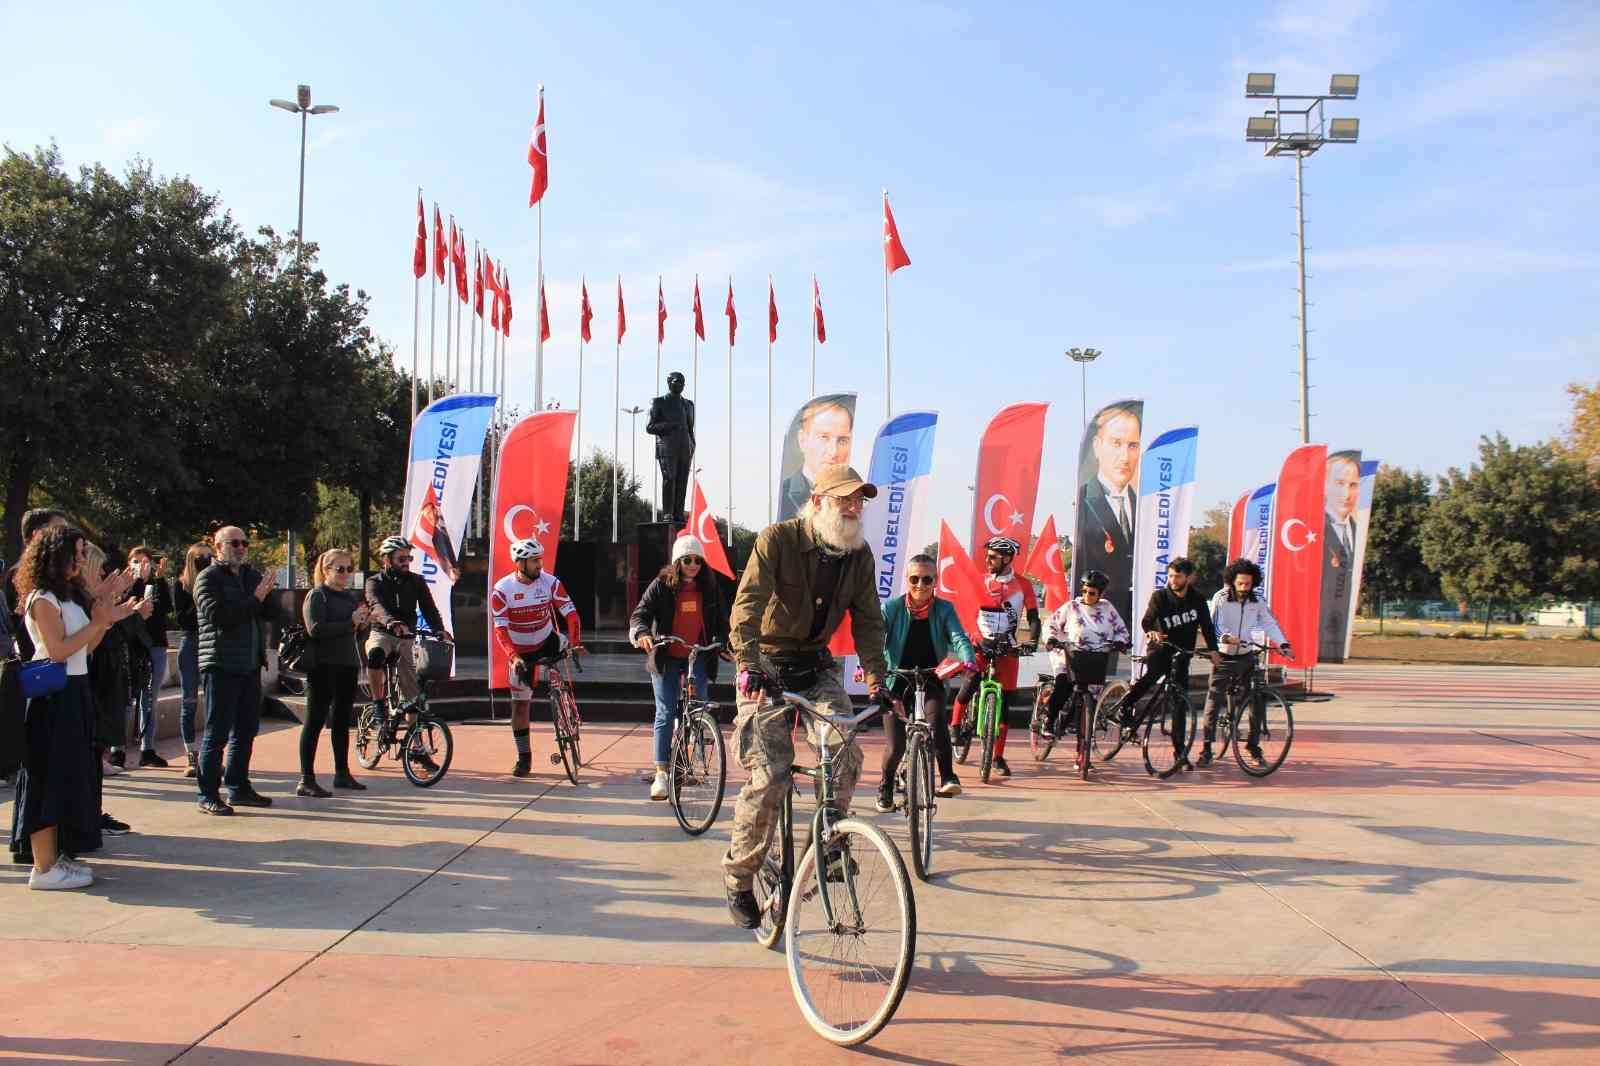 10 bisikletli, Anıtkabir’e varmak üzere Tuzla’dan yola çıktı #istanbul